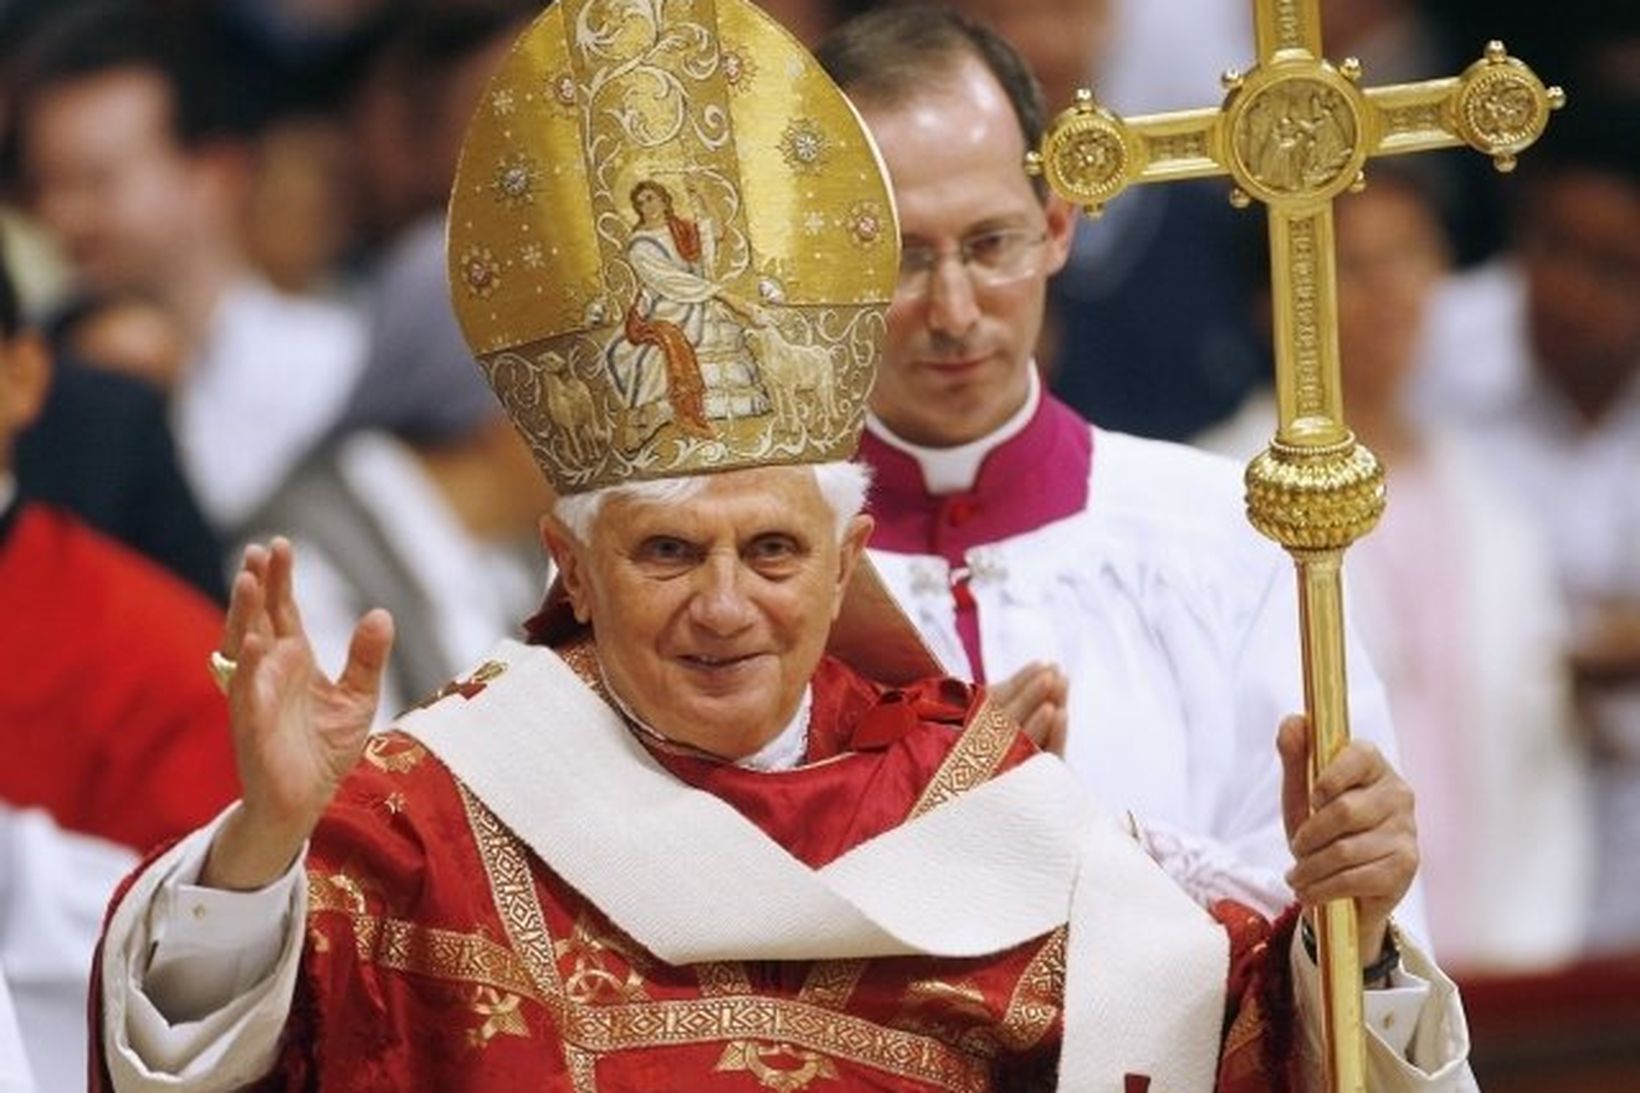 Benedict XVI páfi í St.Peters kirkjunni í Vatikaninu í dag.